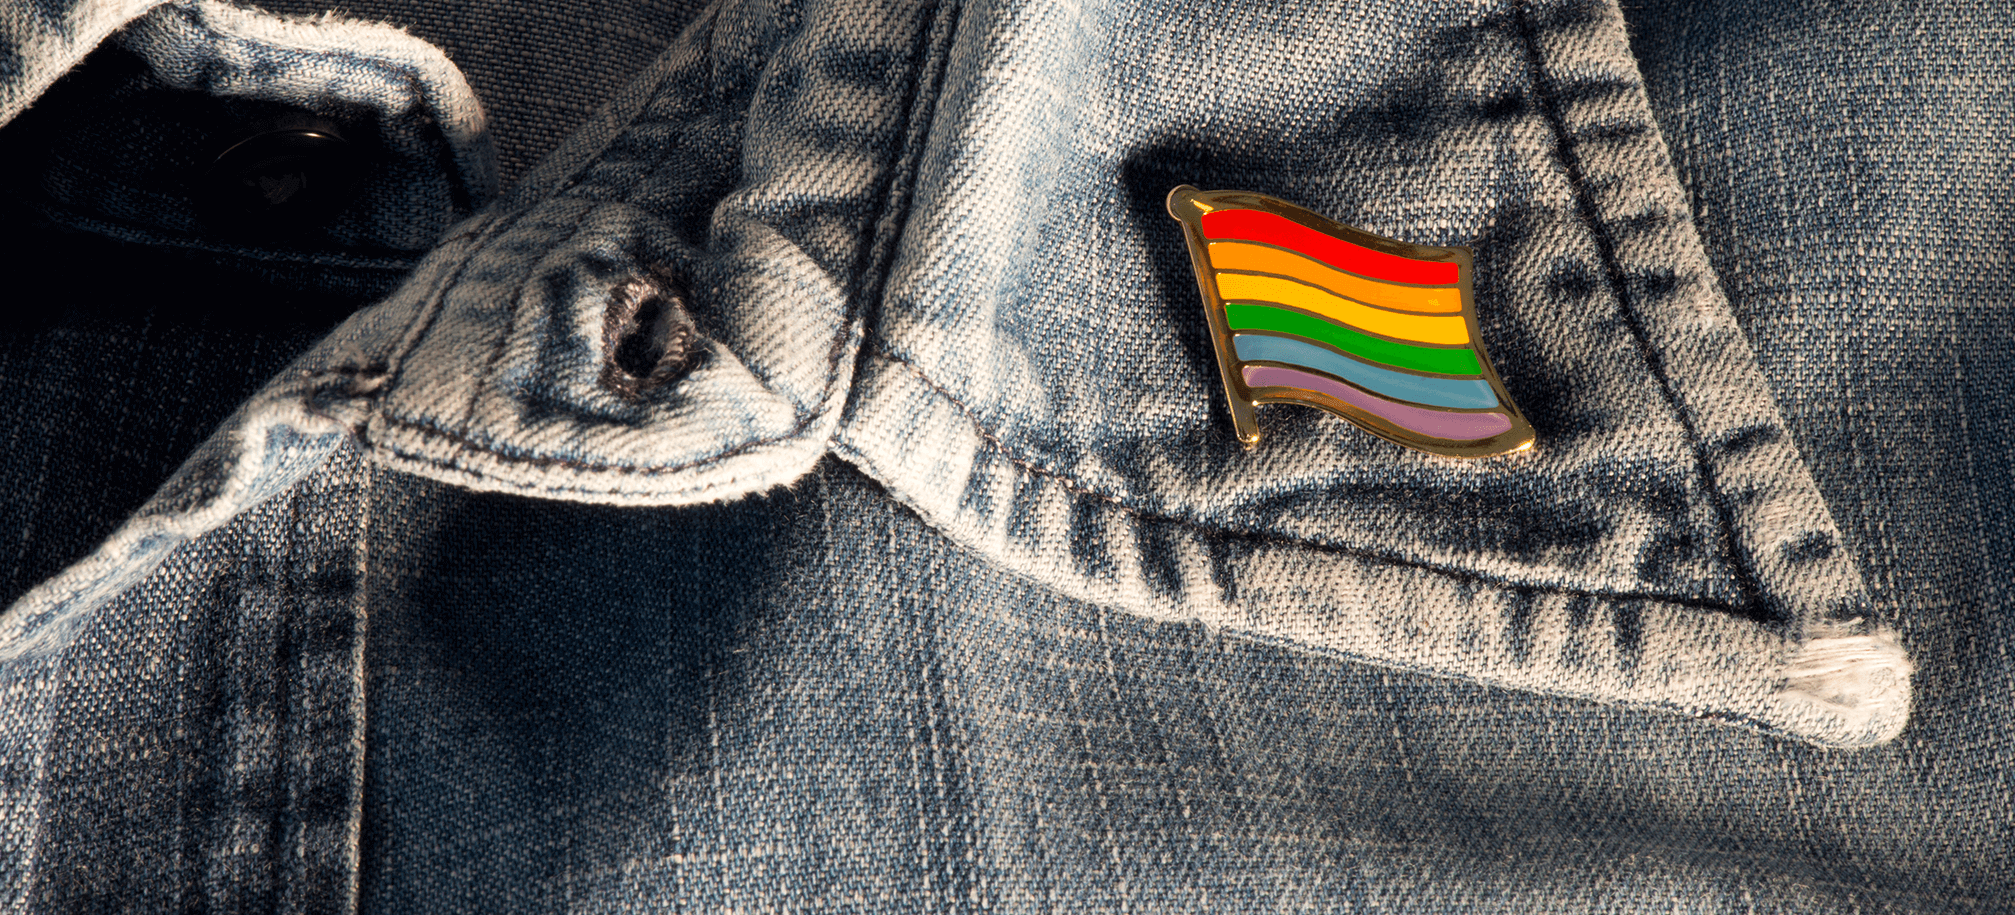 Rainbow Pin on a jean jacket